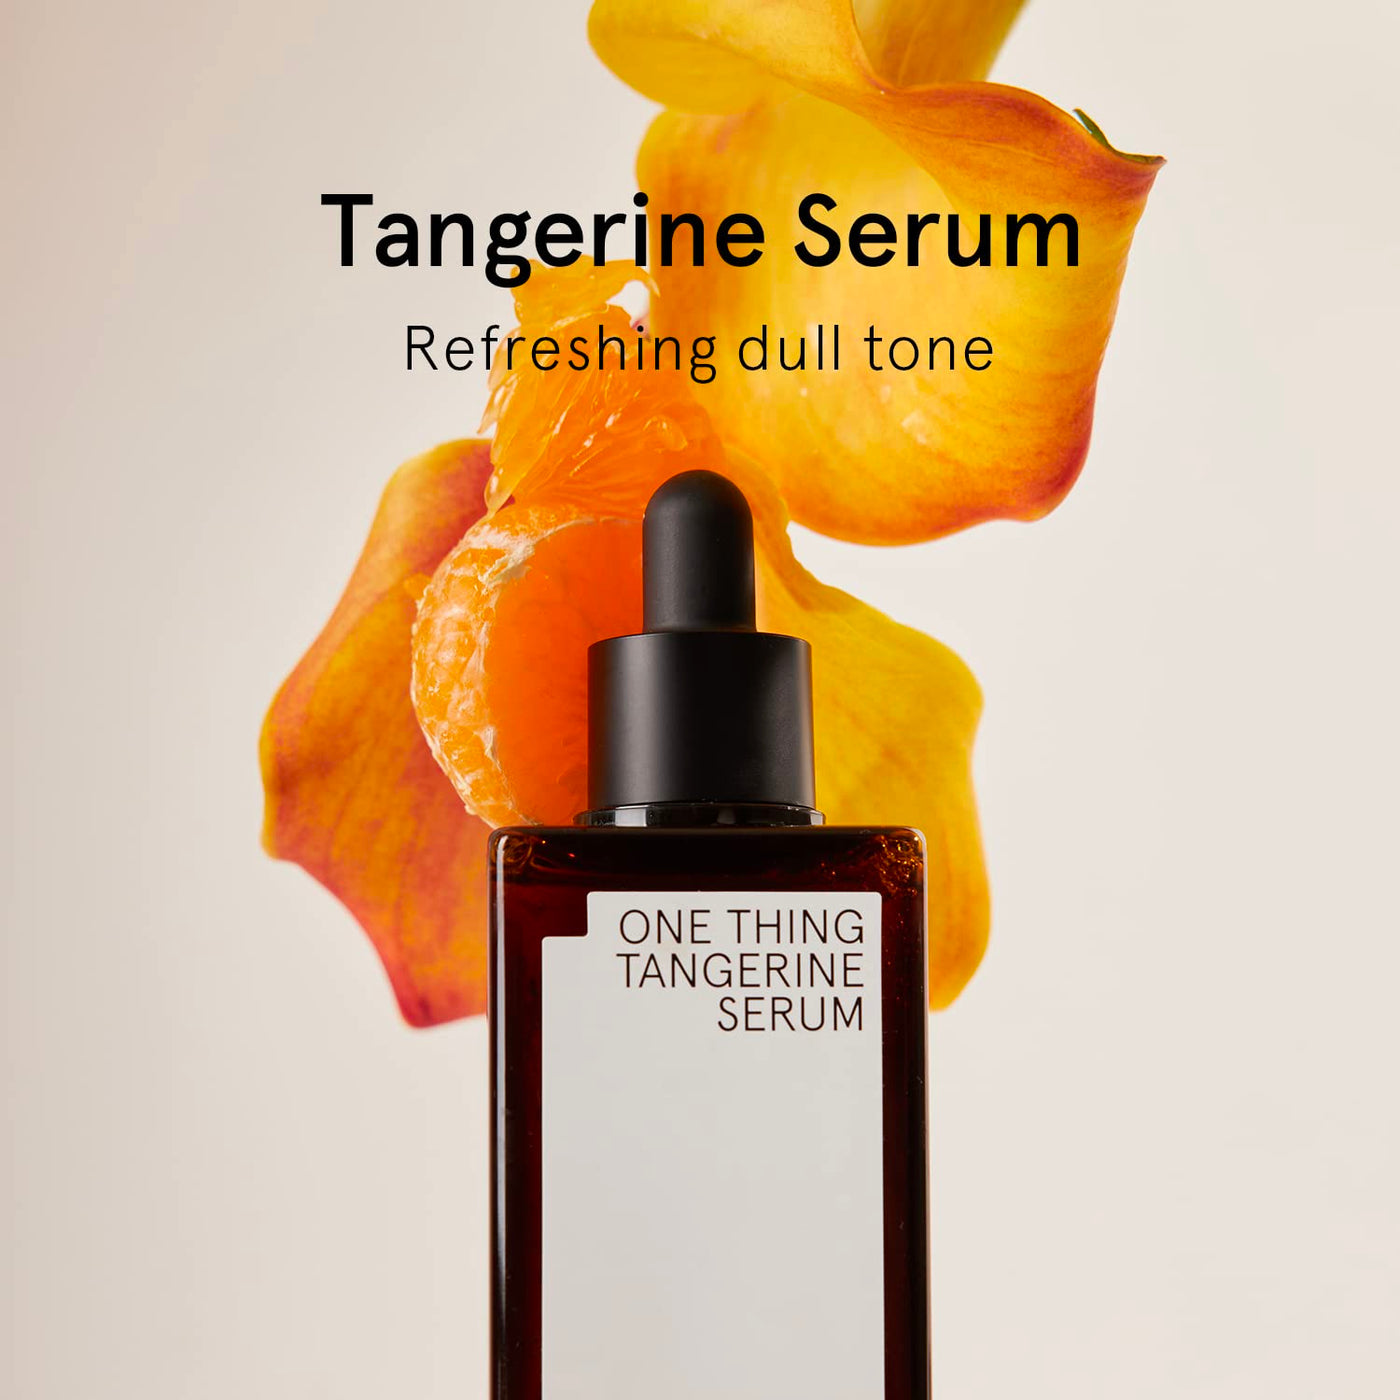 One Thing Tangerine Serum